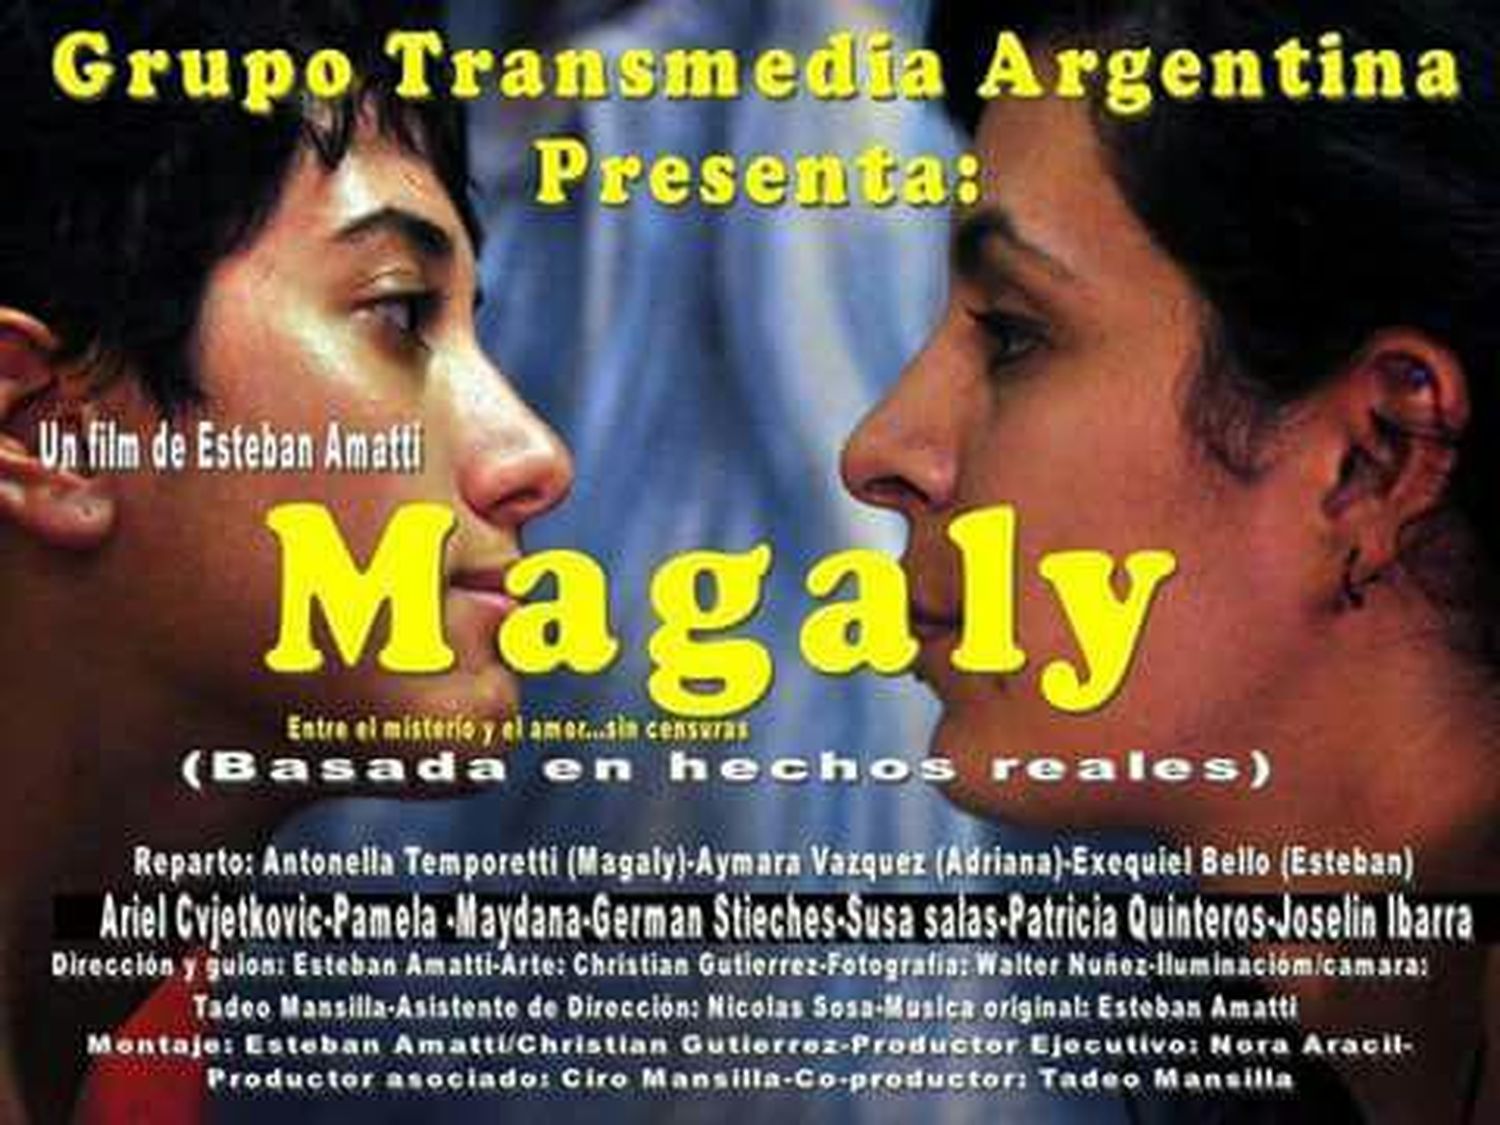 Pamela Maidana participó de la película Magaly que se estrena en junio en Paraná